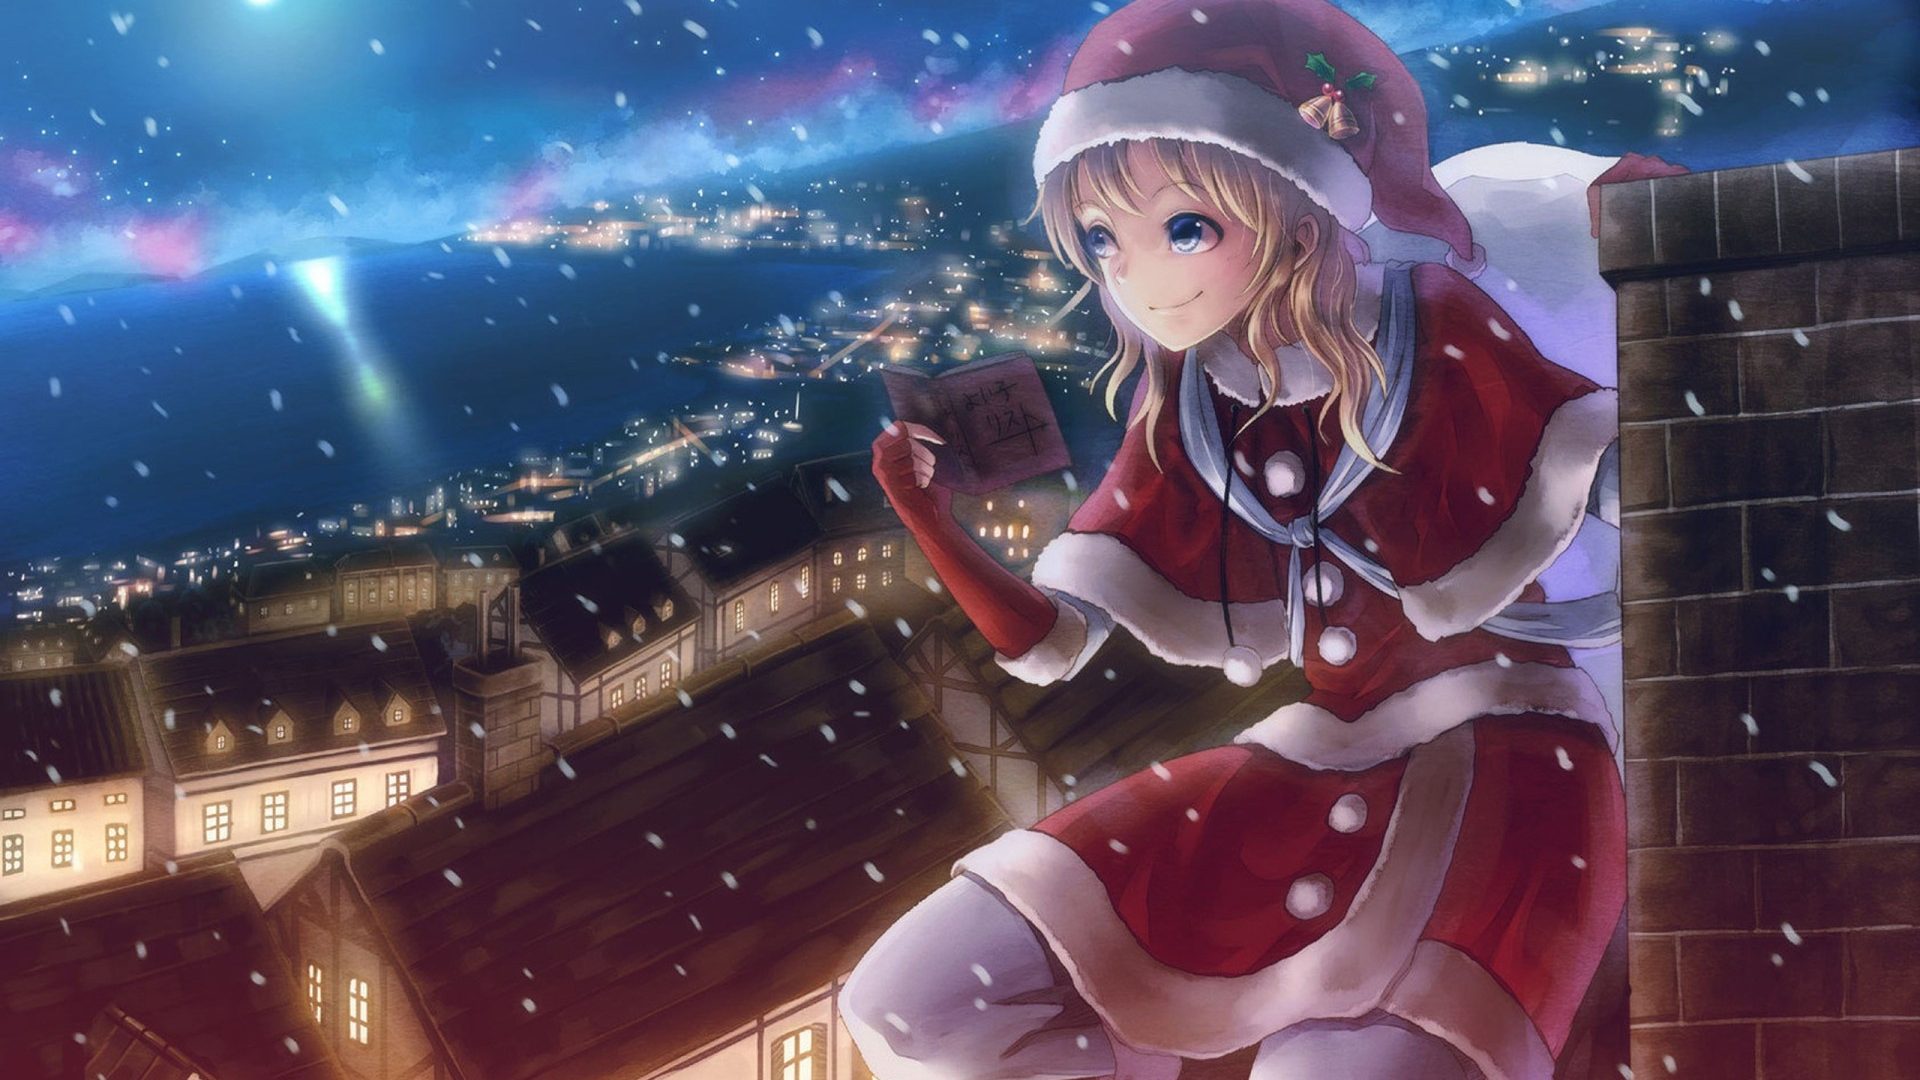 Anime-Girl-in-Santa-Outfit-1920x1080.jpg